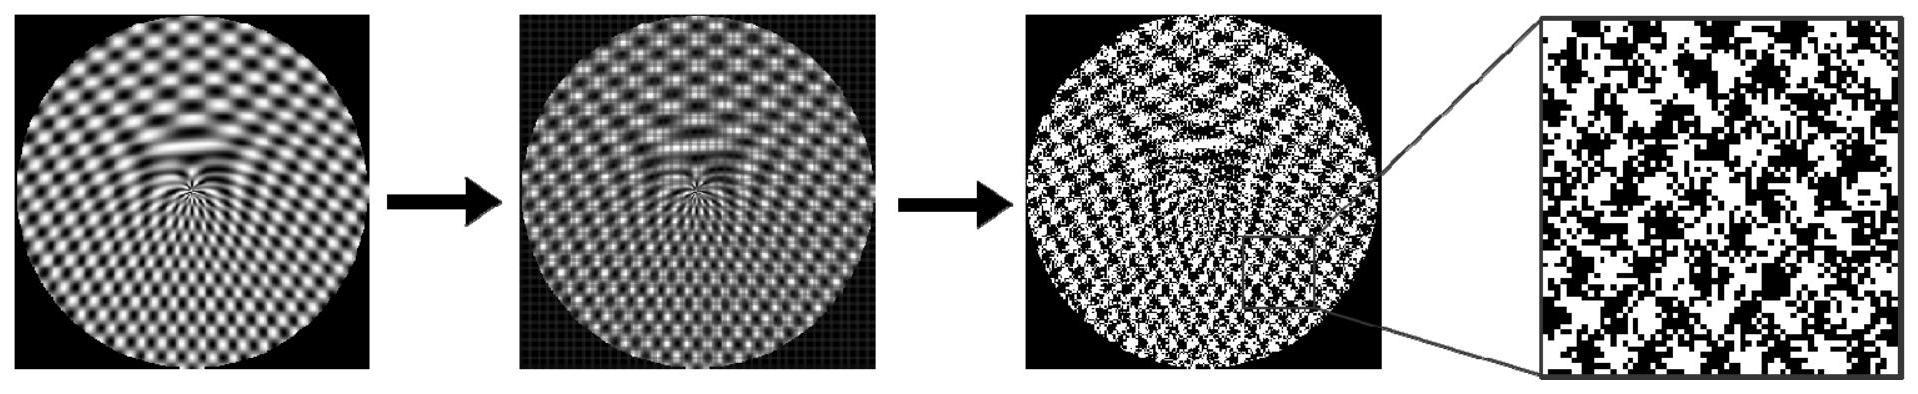 二维量子点阵叉型交叉光栅、光学衍射器件及其制备方法